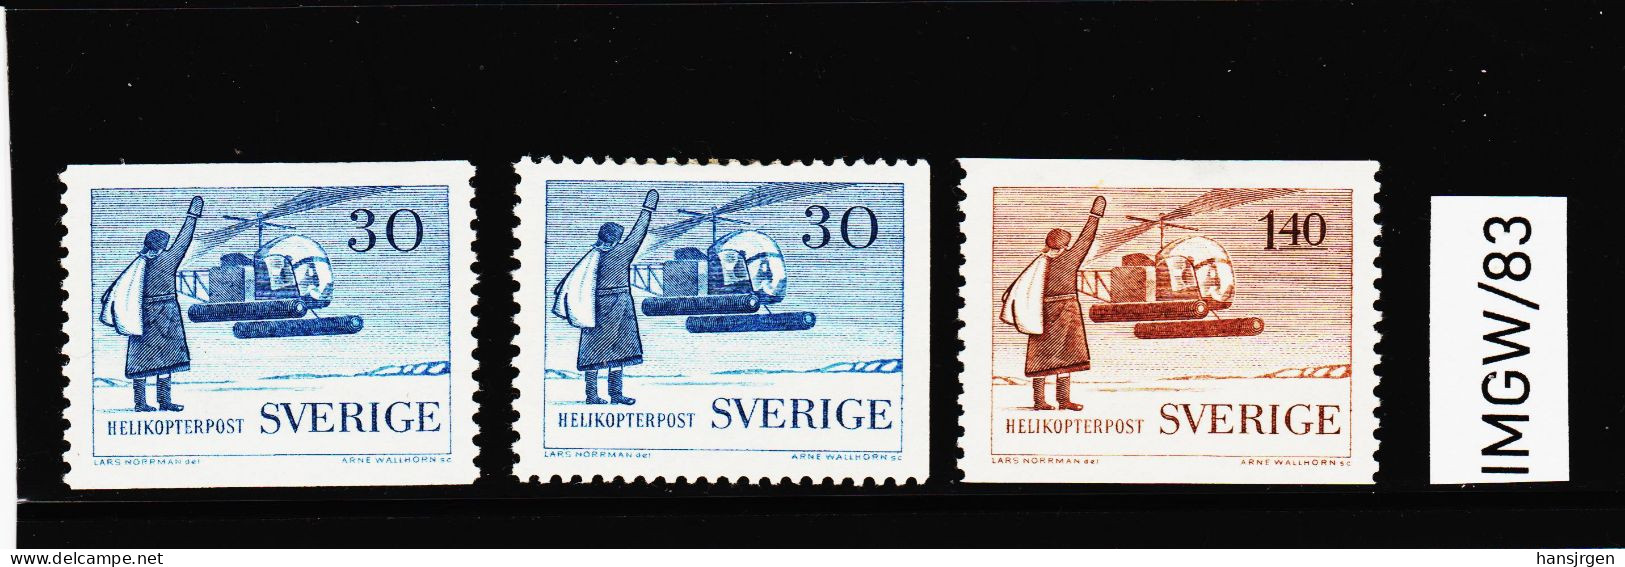 IMGW/83  SCHWEDEN 1958  Michl  434/35  ** Postfrisch ZÄHNUNG SIEHE ABBILDUNG - Unused Stamps